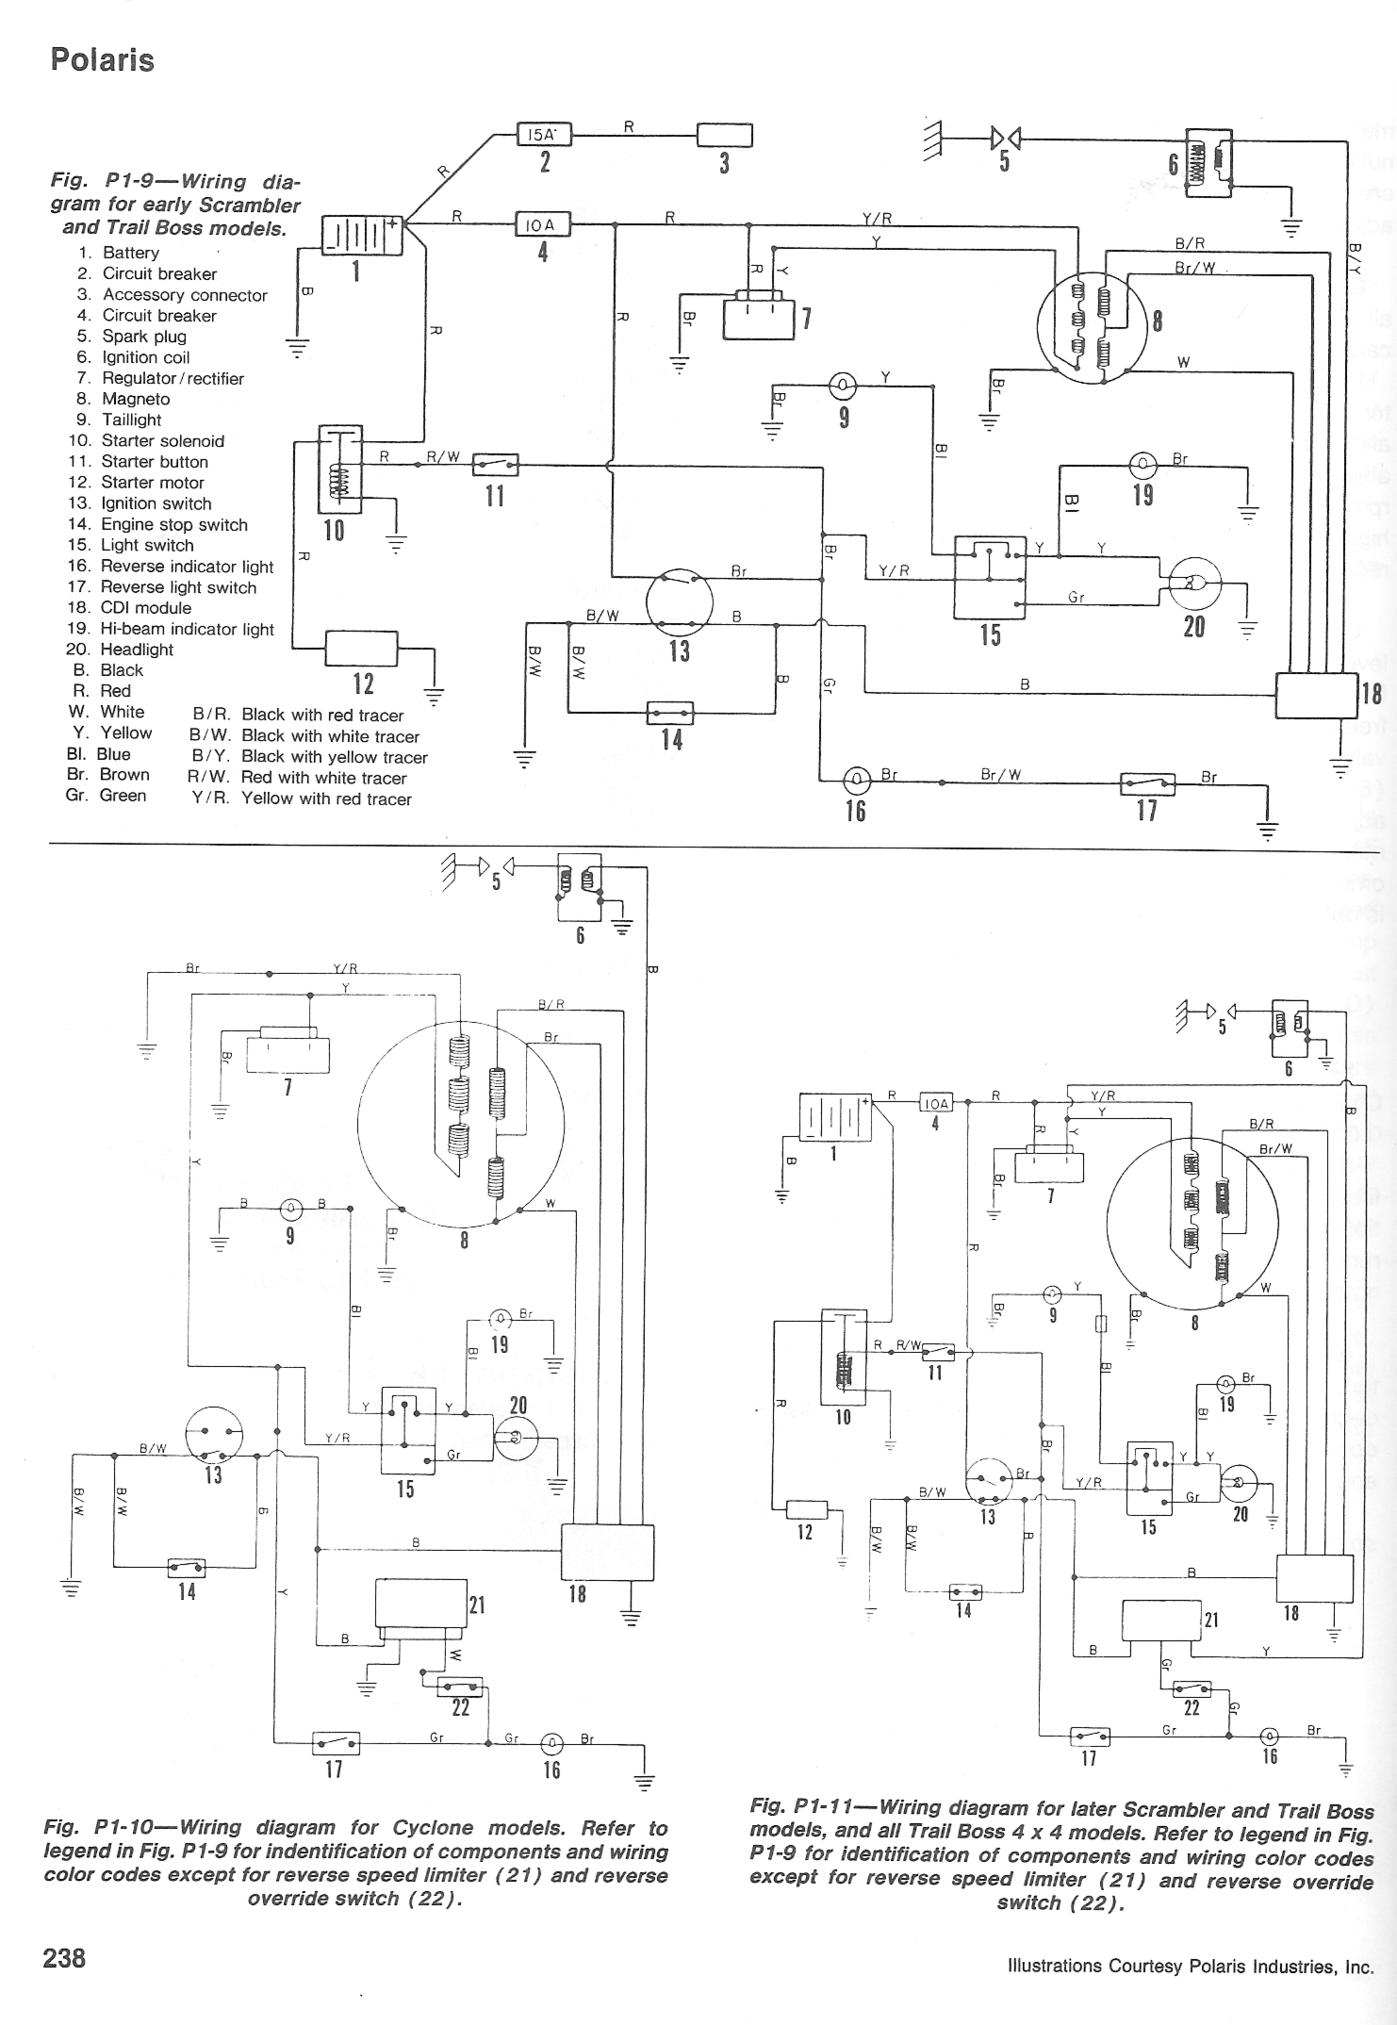 2001 Polaris Scrambler 50 Wiring Diagram